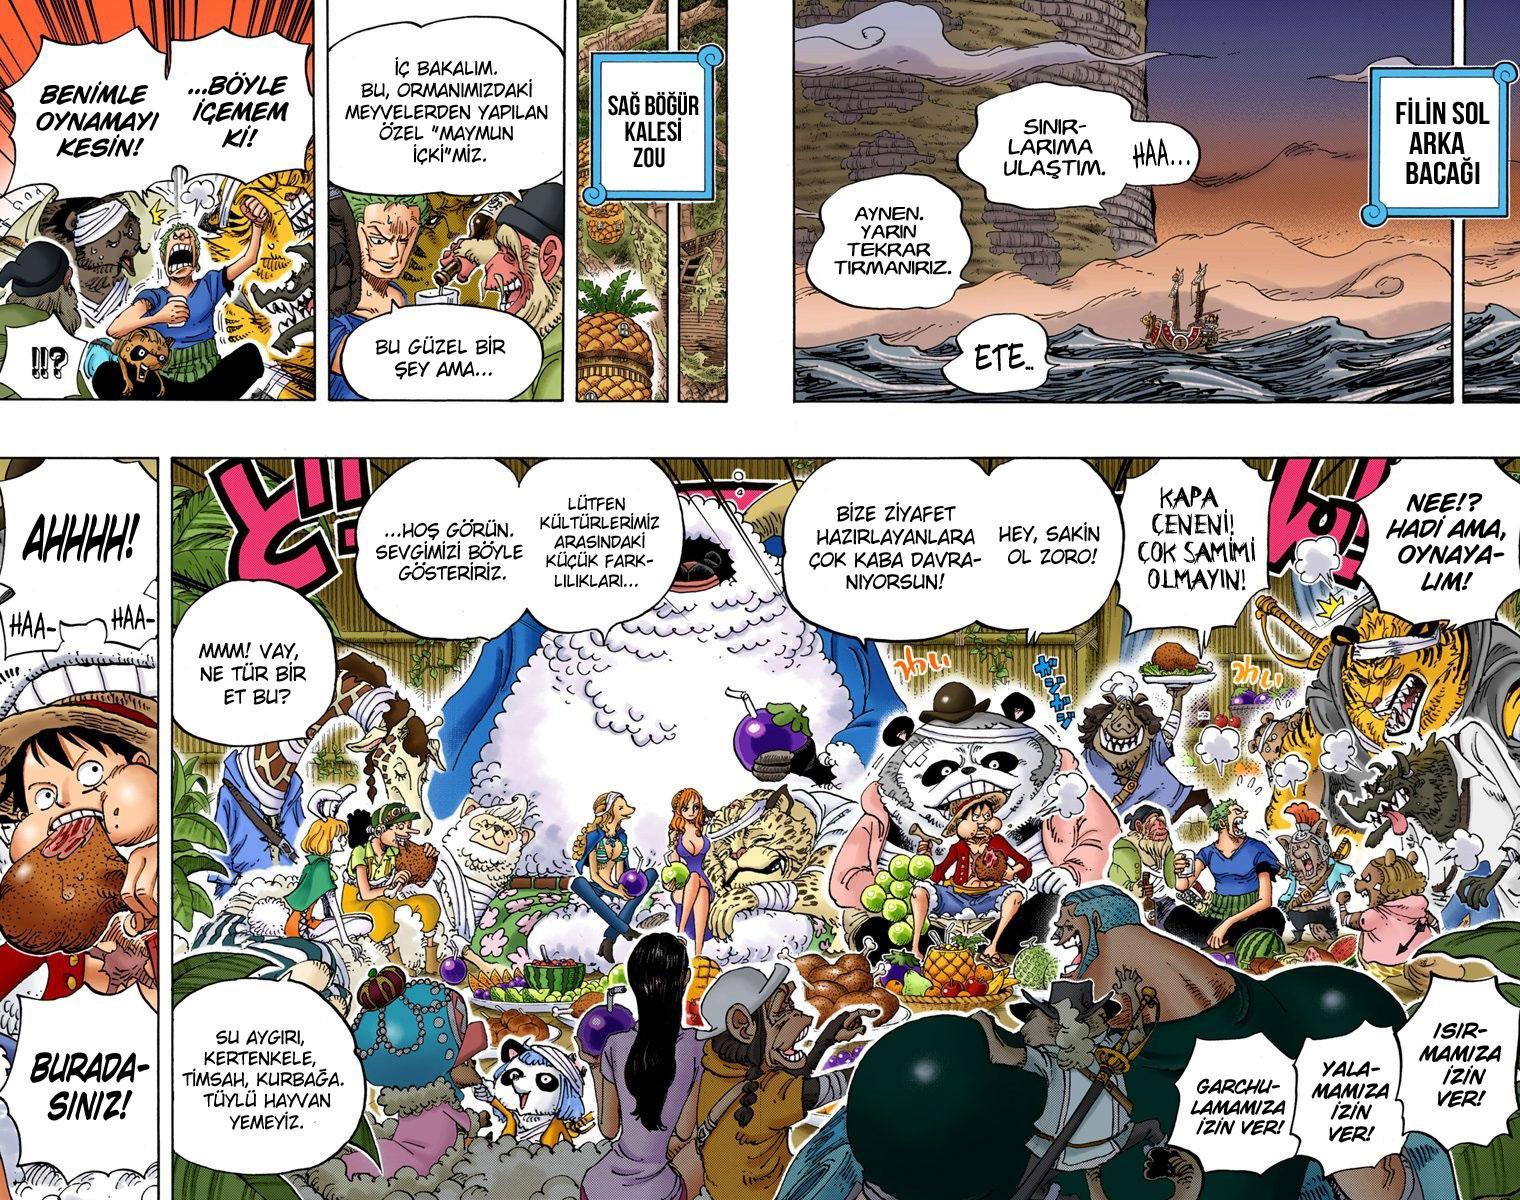 One Piece [Renkli] mangasının 807 bölümünün 3. sayfasını okuyorsunuz.